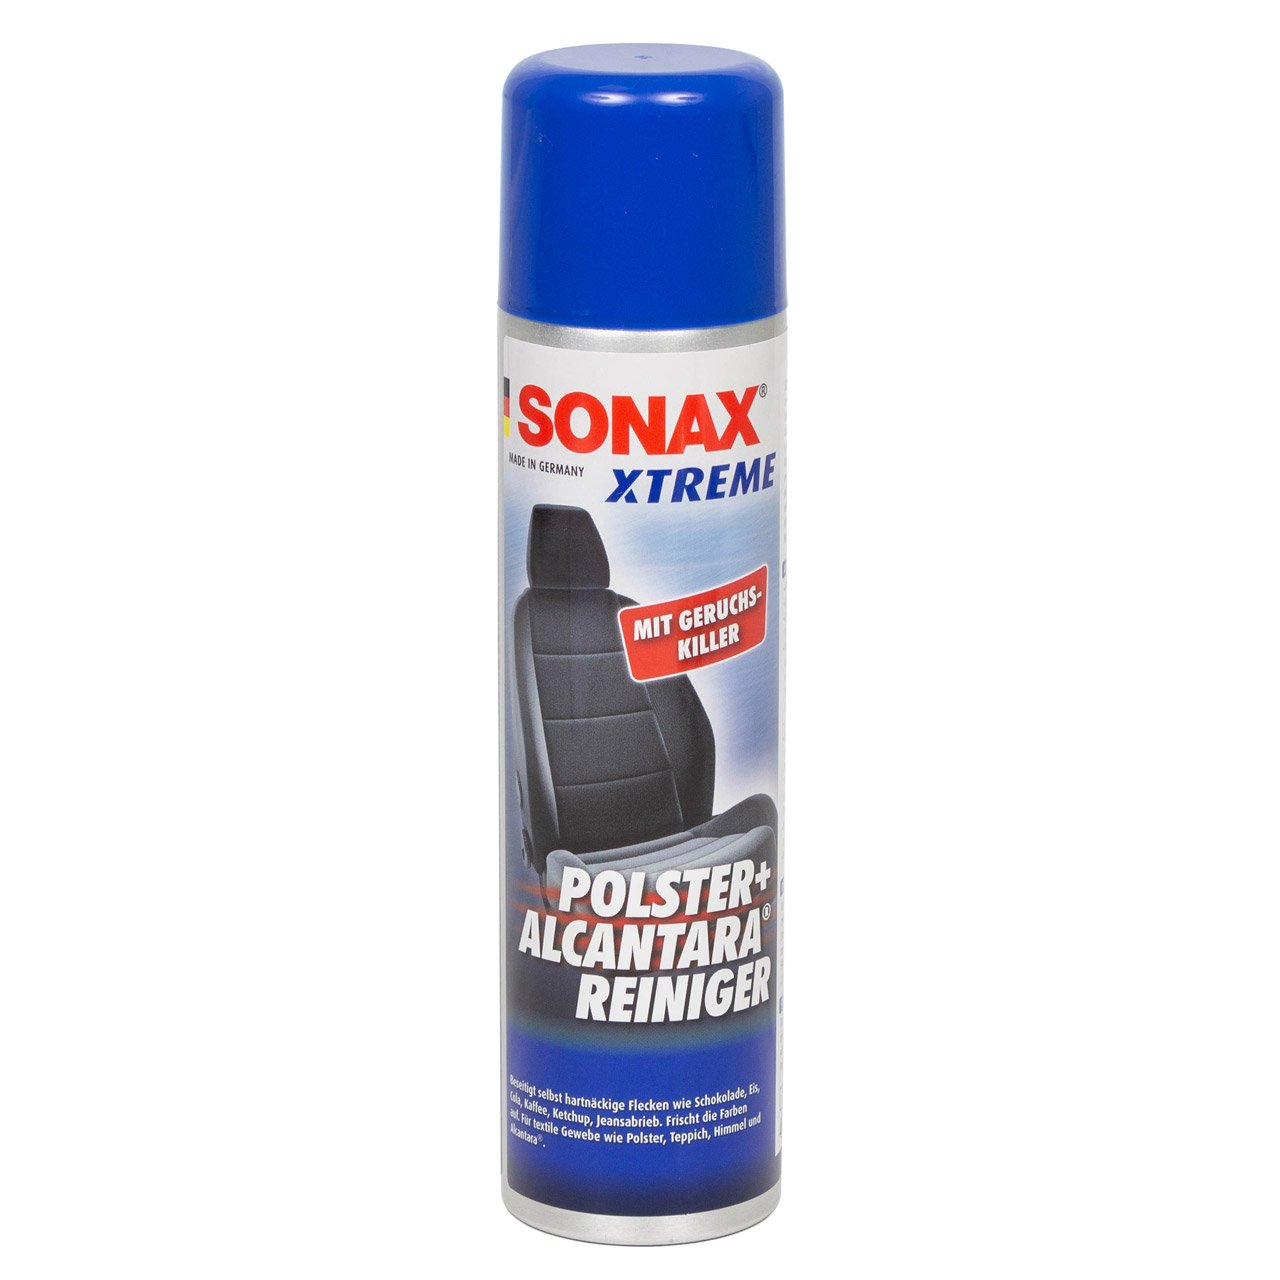 2x 400ml SONAX Xtreme Polster- & AlcantaraReiniger Geruchskiller Reiniger 206300